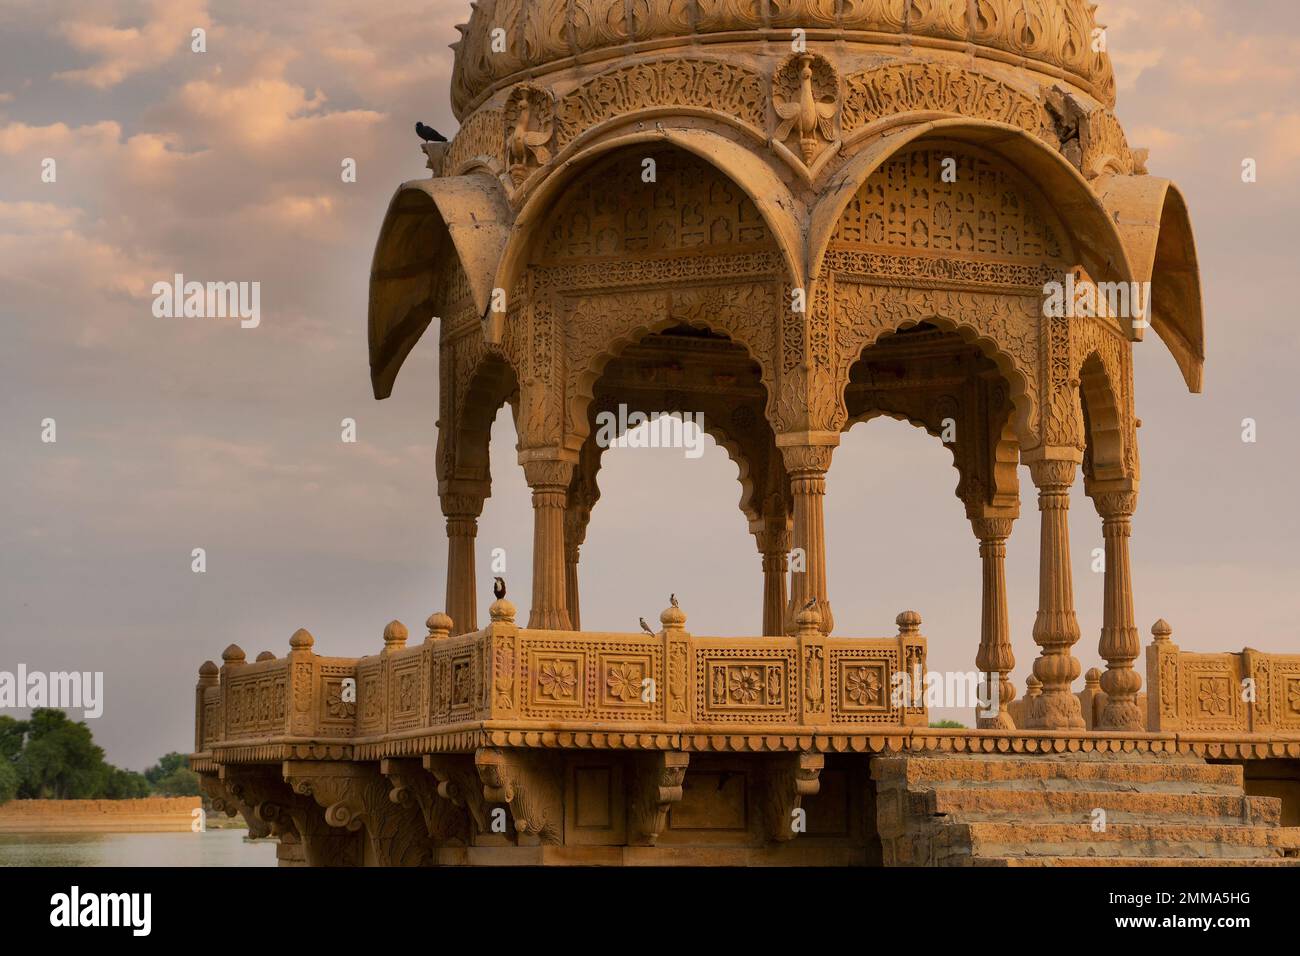 Vue rapprochée de Chhatris et sanctuaires de dieux hindous et déesses au lac Gadisar, Jaisalmer, Rajasthan, Inde. Architecture indo-islamique, coucher de soleil. Banque D'Images